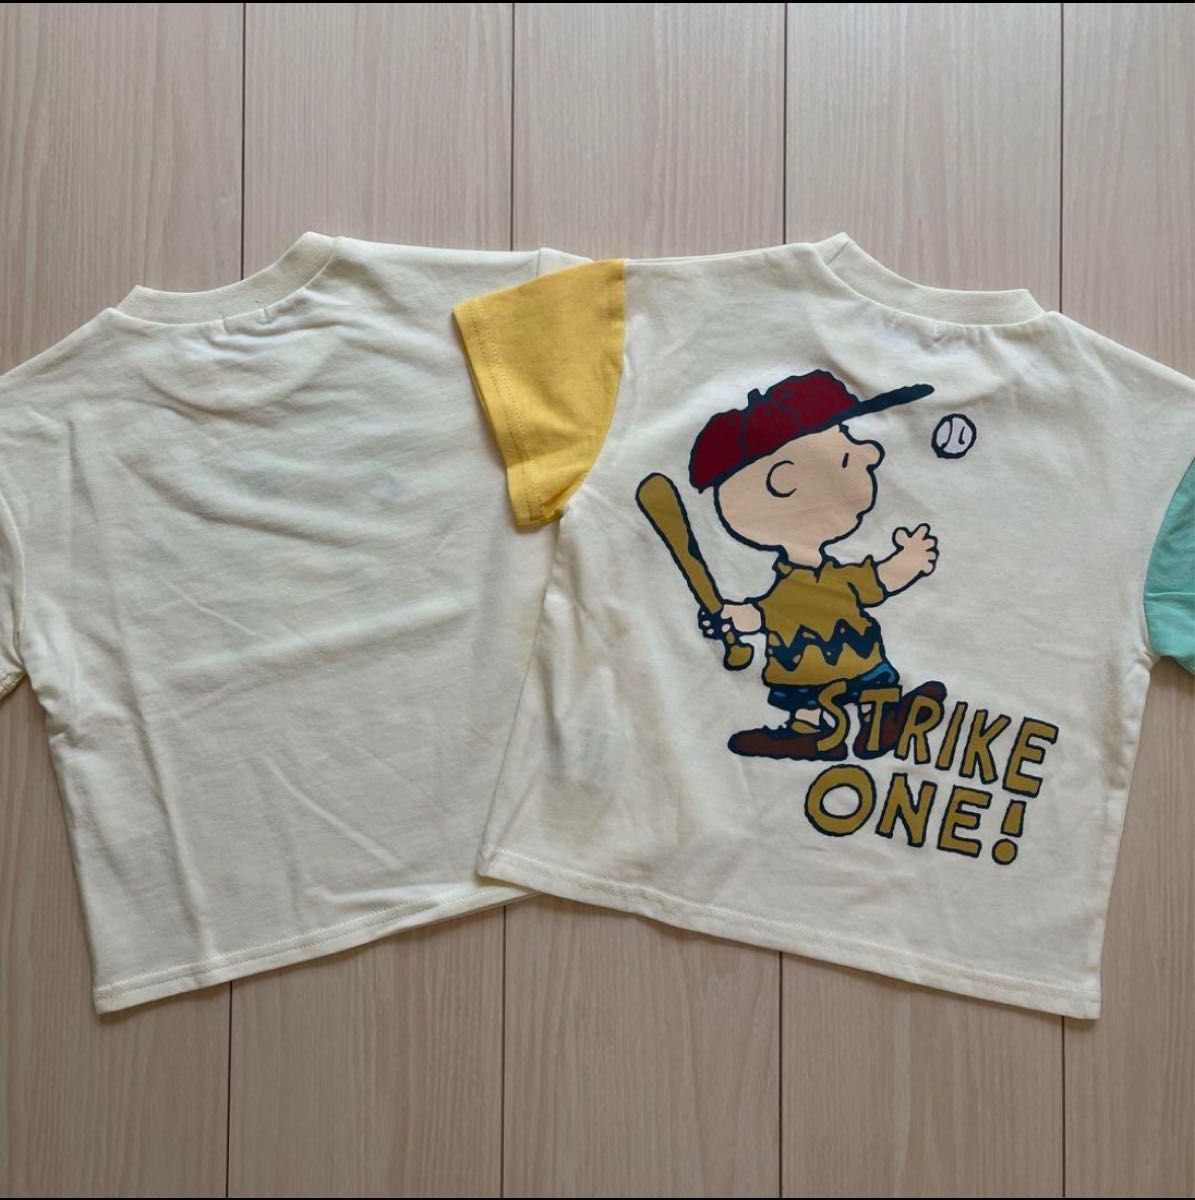 【スヌーピー】チャーリーブラウン 袖切り替え Tシャツ キャラクター 2点セット 100